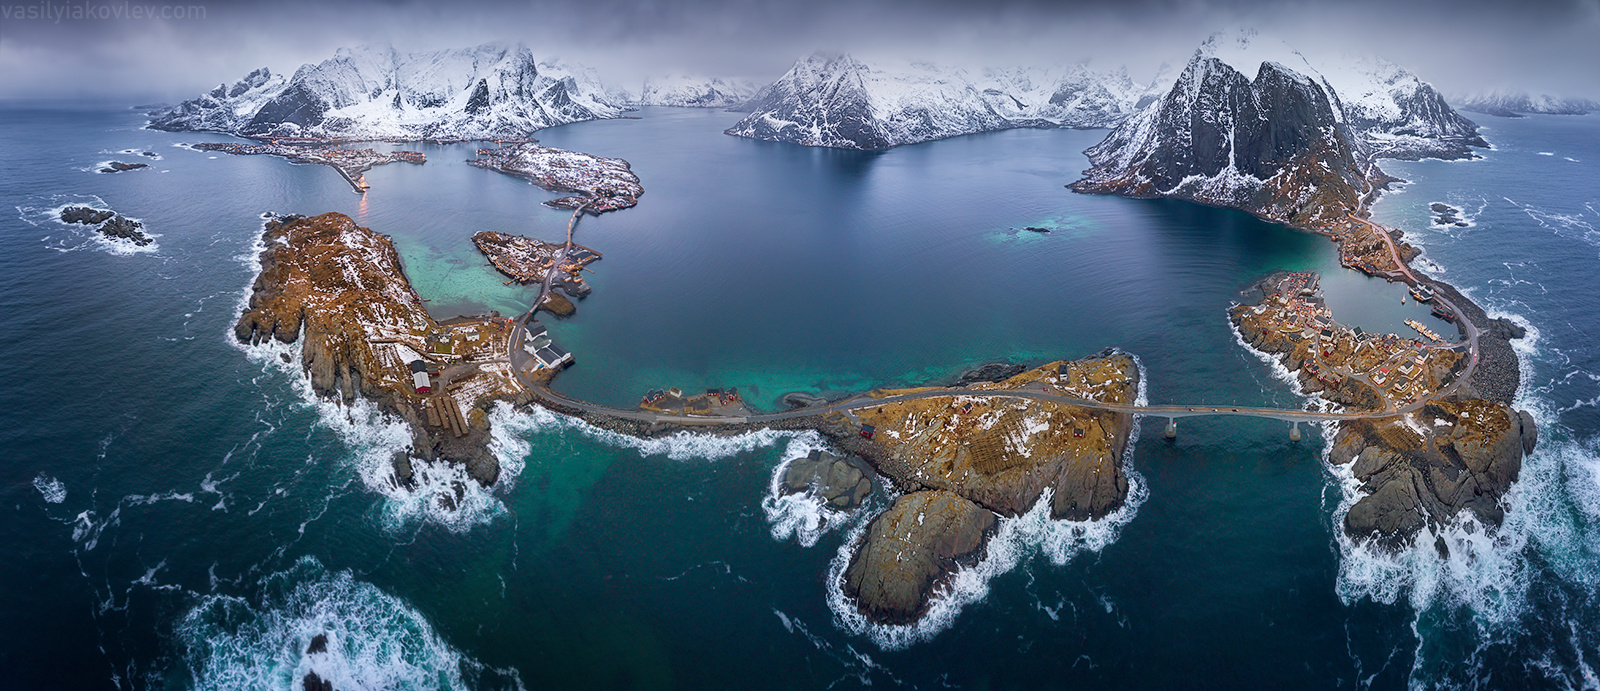 Панорама Лофотенских островов лофотены норвегия фототур василийяковлев яковлевфототур